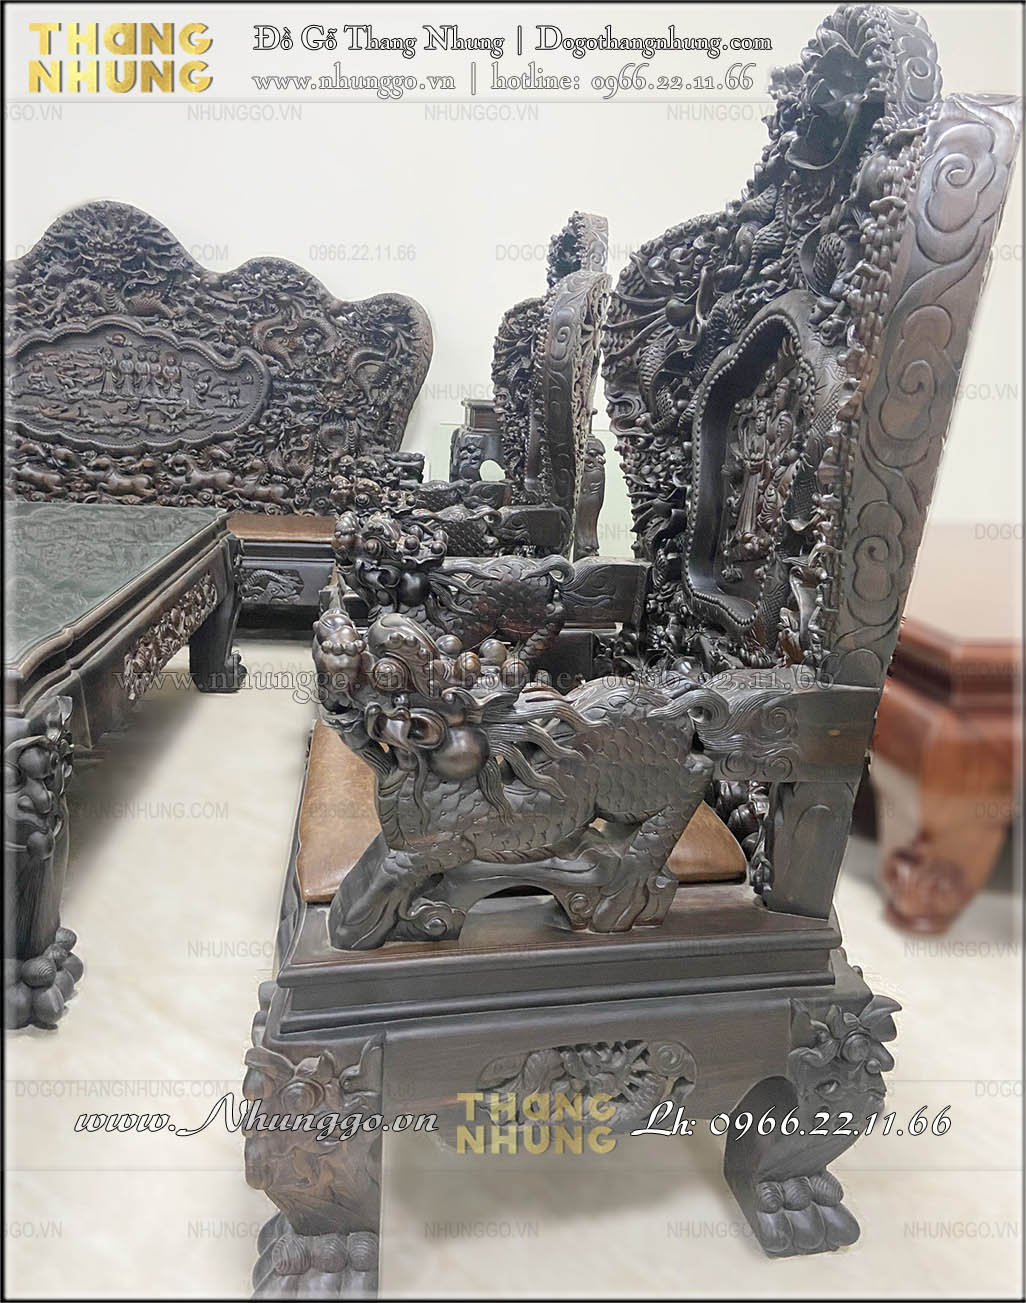 Báo giá bộ bàn ghế bát mã gỗ tự nhiên được làm thủ công bởi các nghệ nhân làng nghề Đồng Kỵ, Từ Sơn, Bắc Ninh